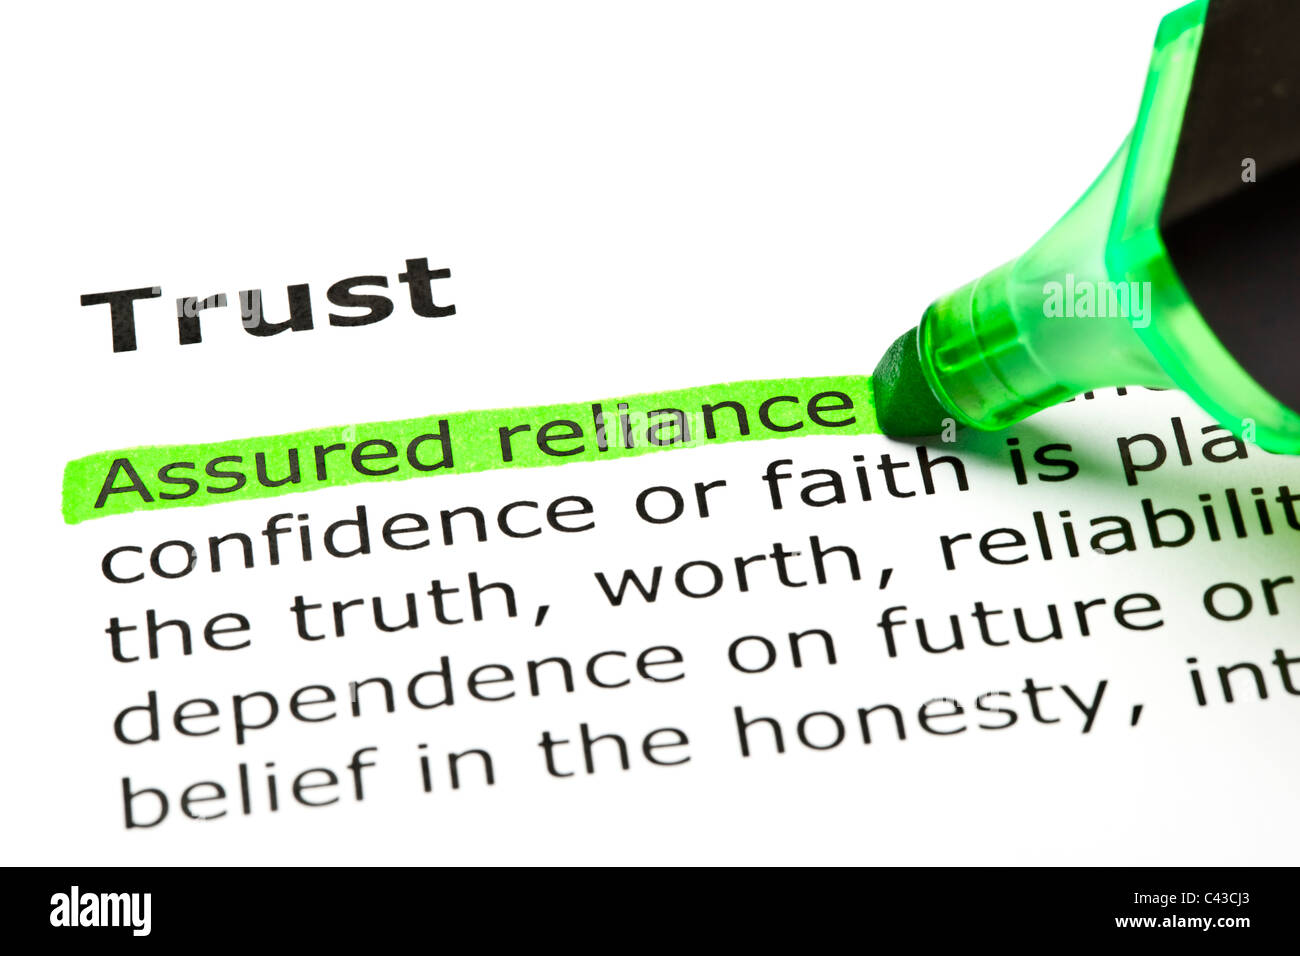 "Versicherte Vertrauen" grün, unter der Überschrift "Trust" markiert Stockfoto